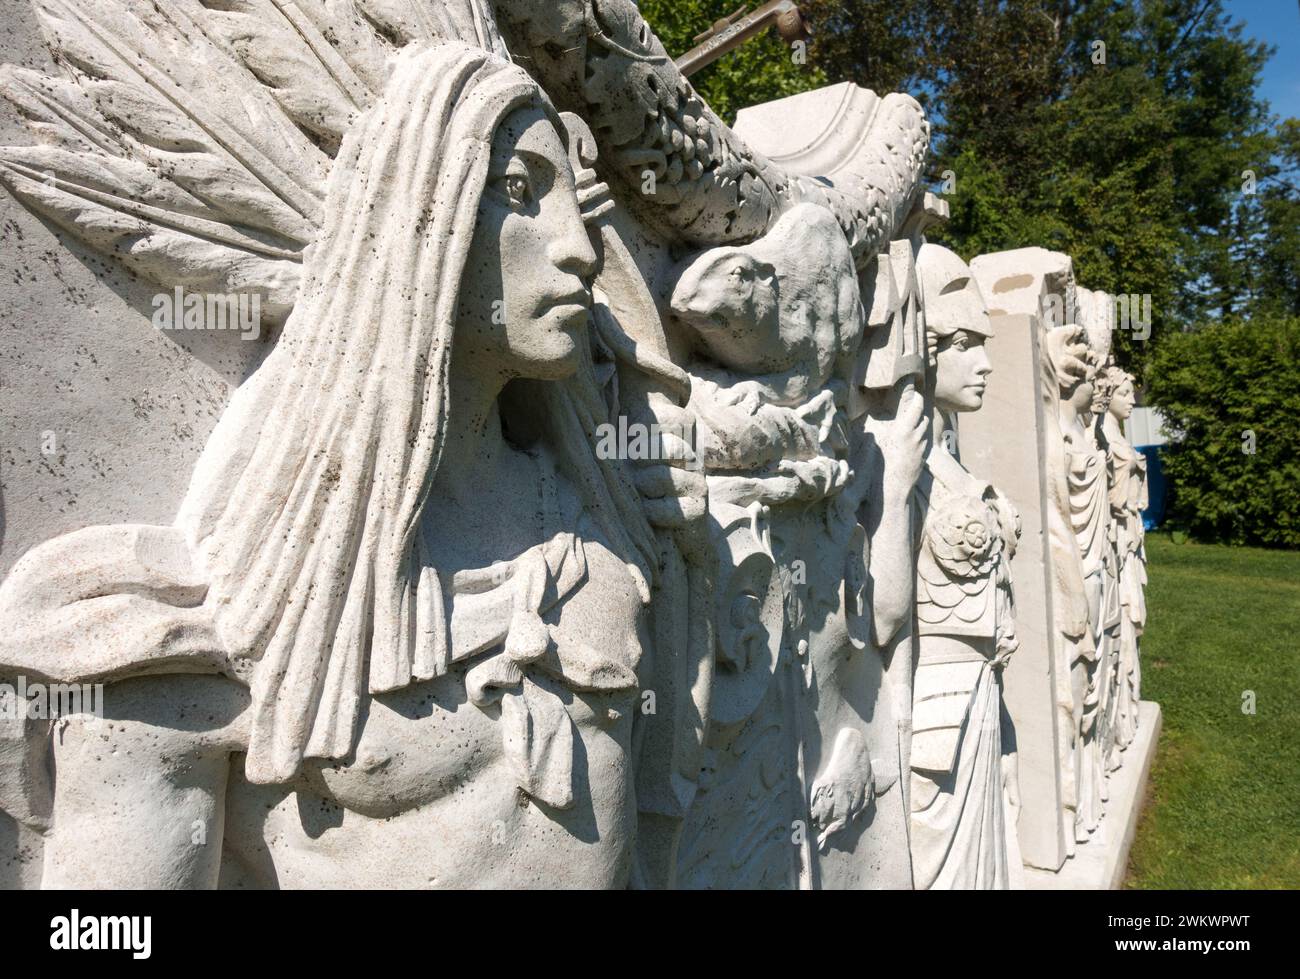 Sculpture des armoiries de Toronto représentant un autochtone canadien et une figure de Britanica située au jardin des sculptures de la Guilde à Toronto, en Ontario Banque D'Images